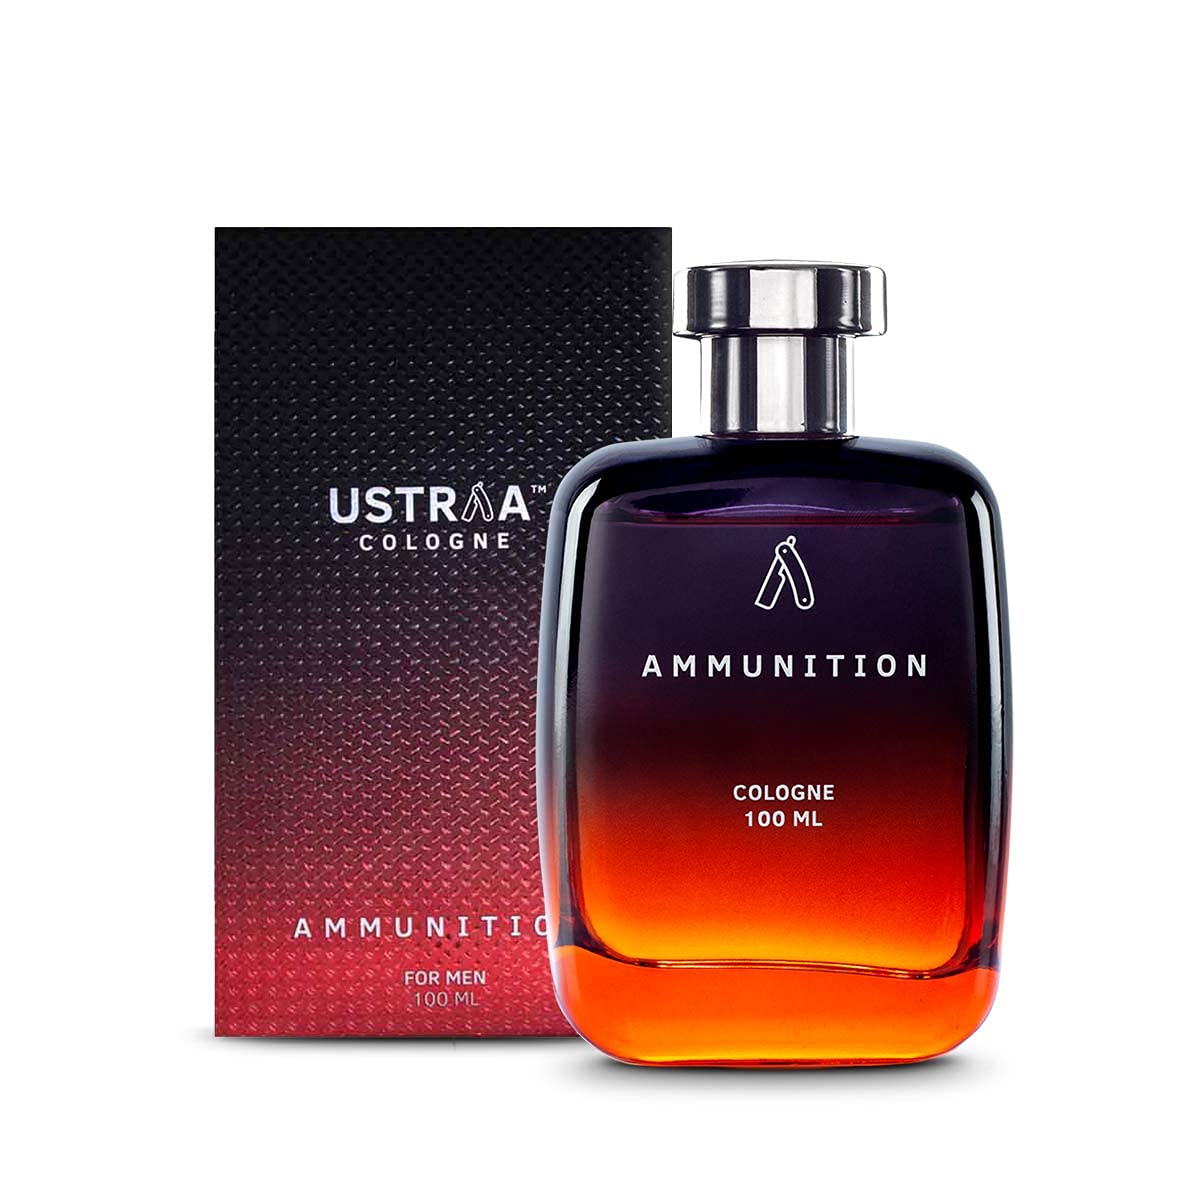 Ustraa Ammunition Cologne Perfume for Men